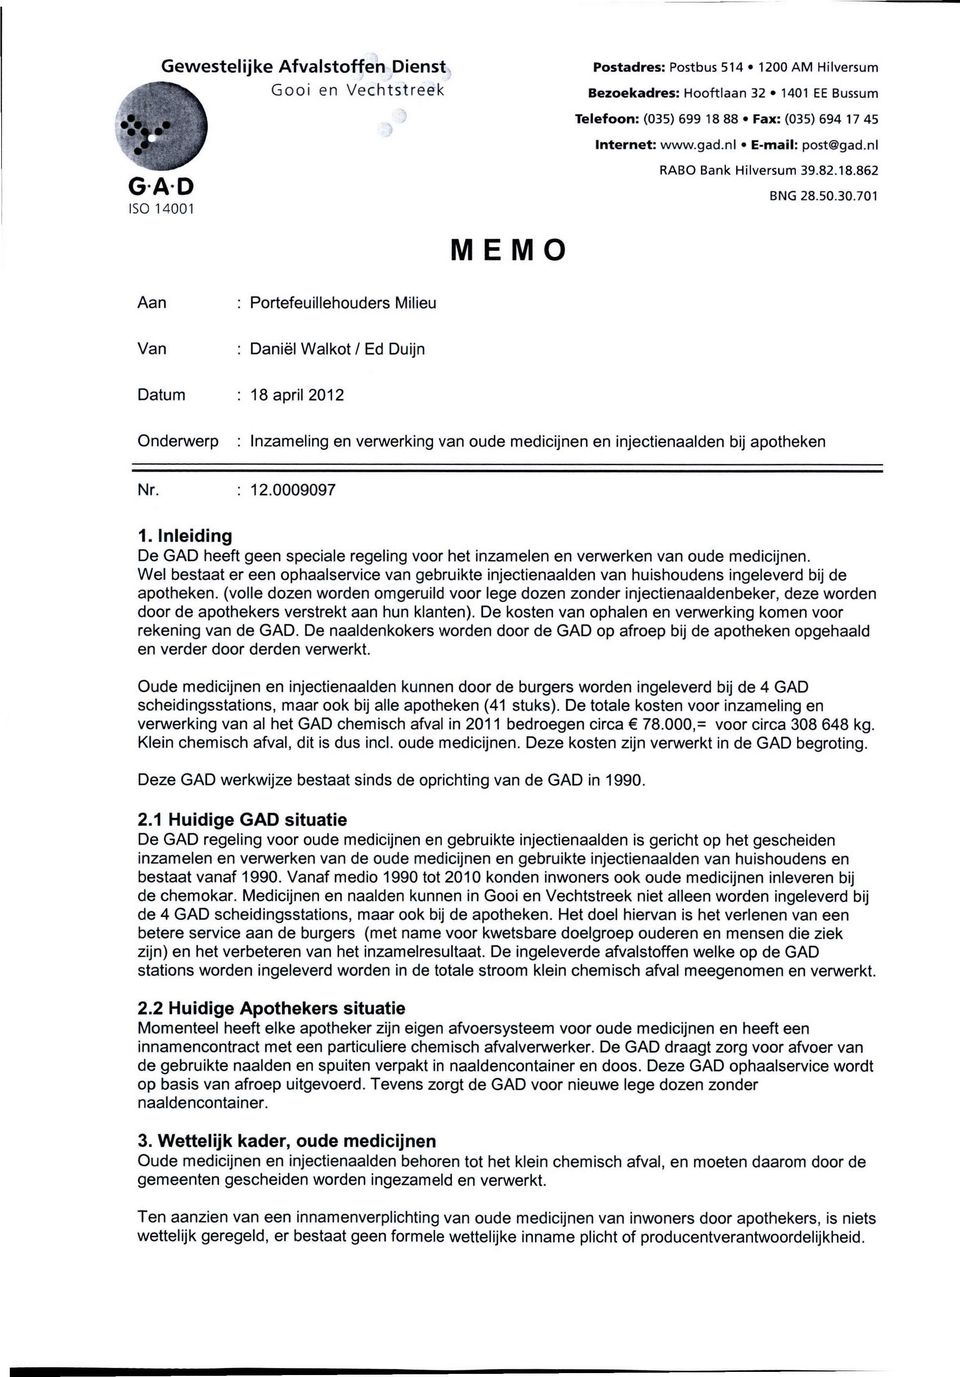 701 ISO 14001 MEMO Aan Portefeuillehouders Milieu Van Daniël Walkot / Ed Duijn Datum 18 april 2012 Onderwerp : Inzameling en verwerking van oude medicijnen en injectienaalden bij apotheken Nr. 12.